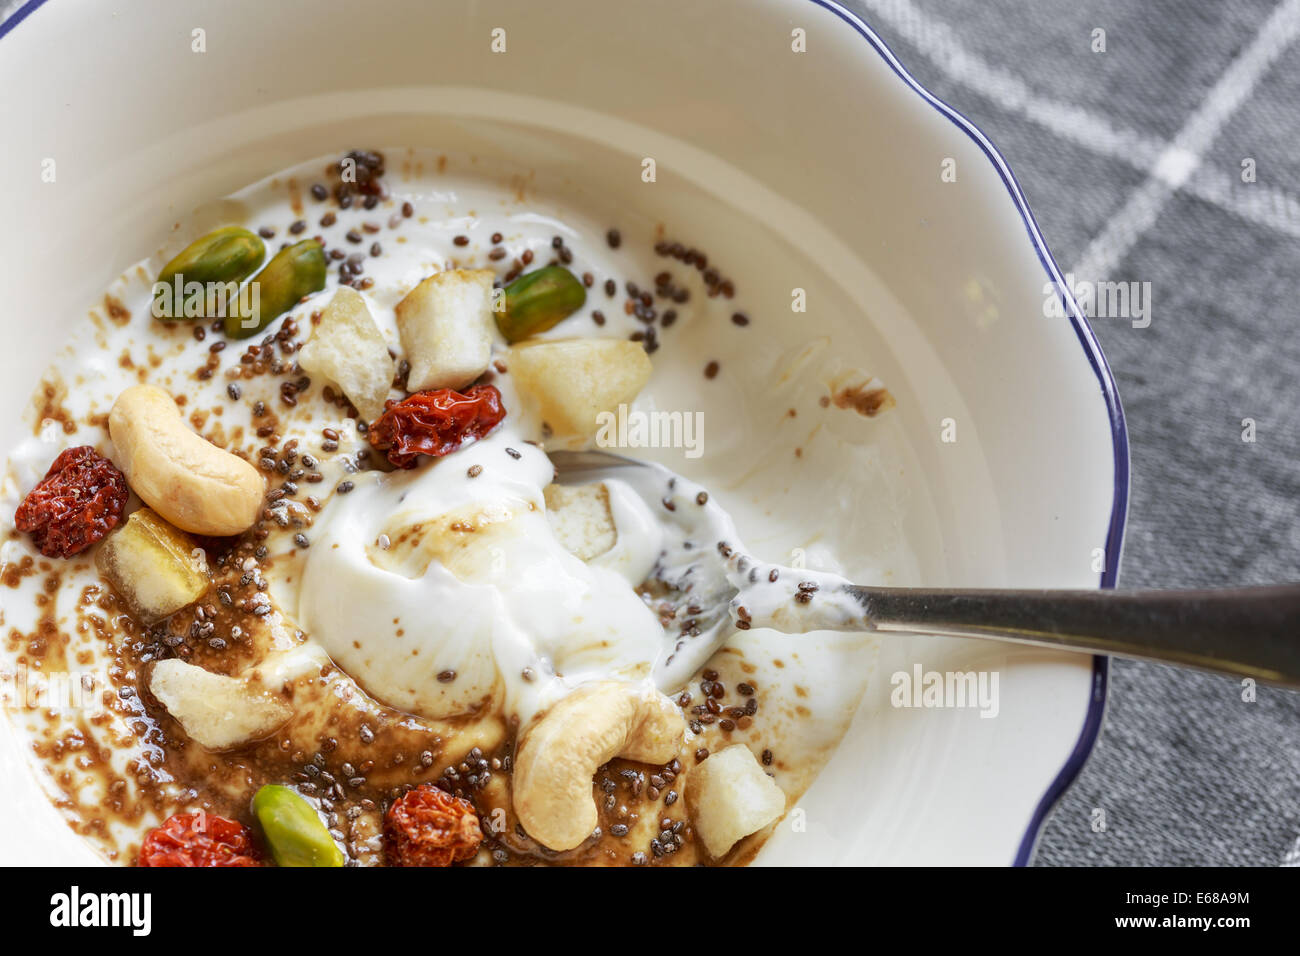 Desayuno saludable con yogur griego, caña de azúcar, frutos secos y semillas de chia Foto de stock